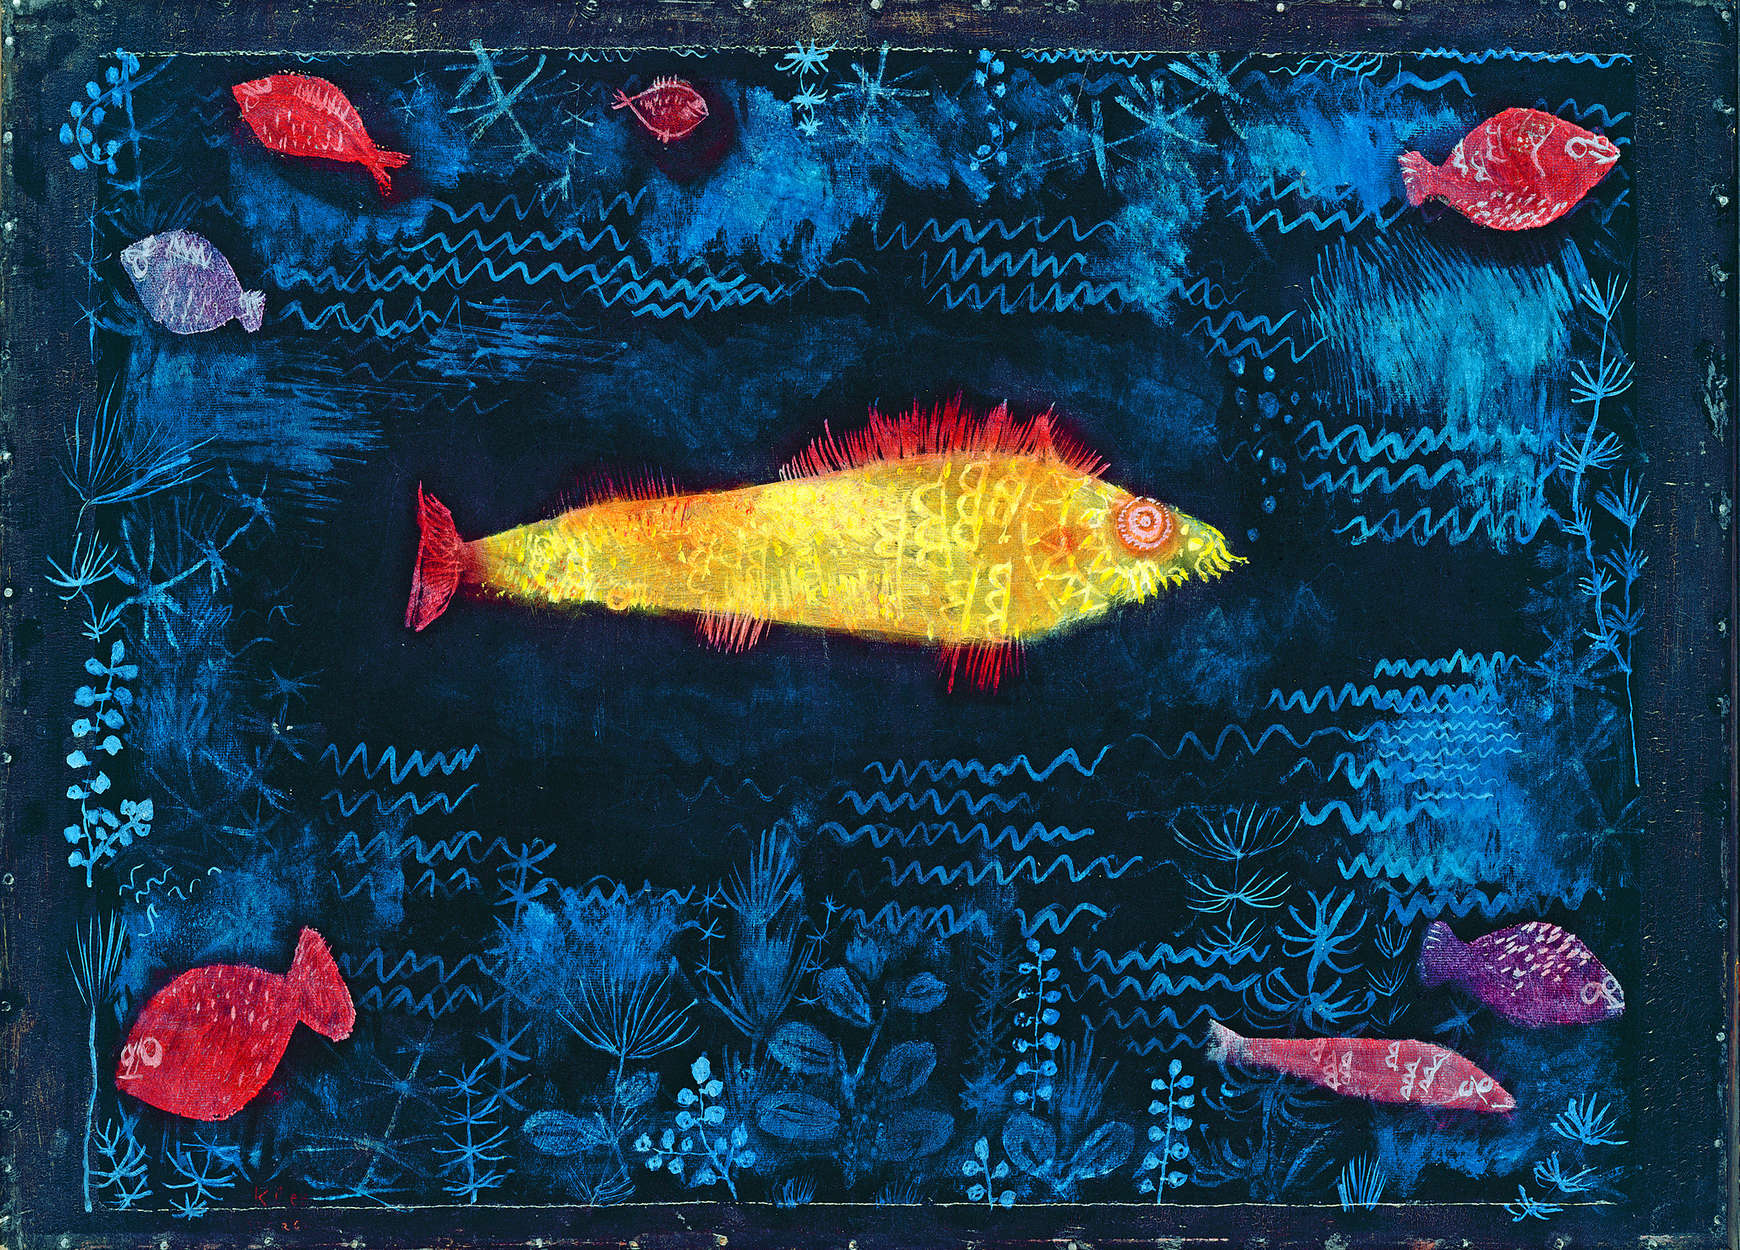             Mural "El pez dorado" de Paul Klee
        